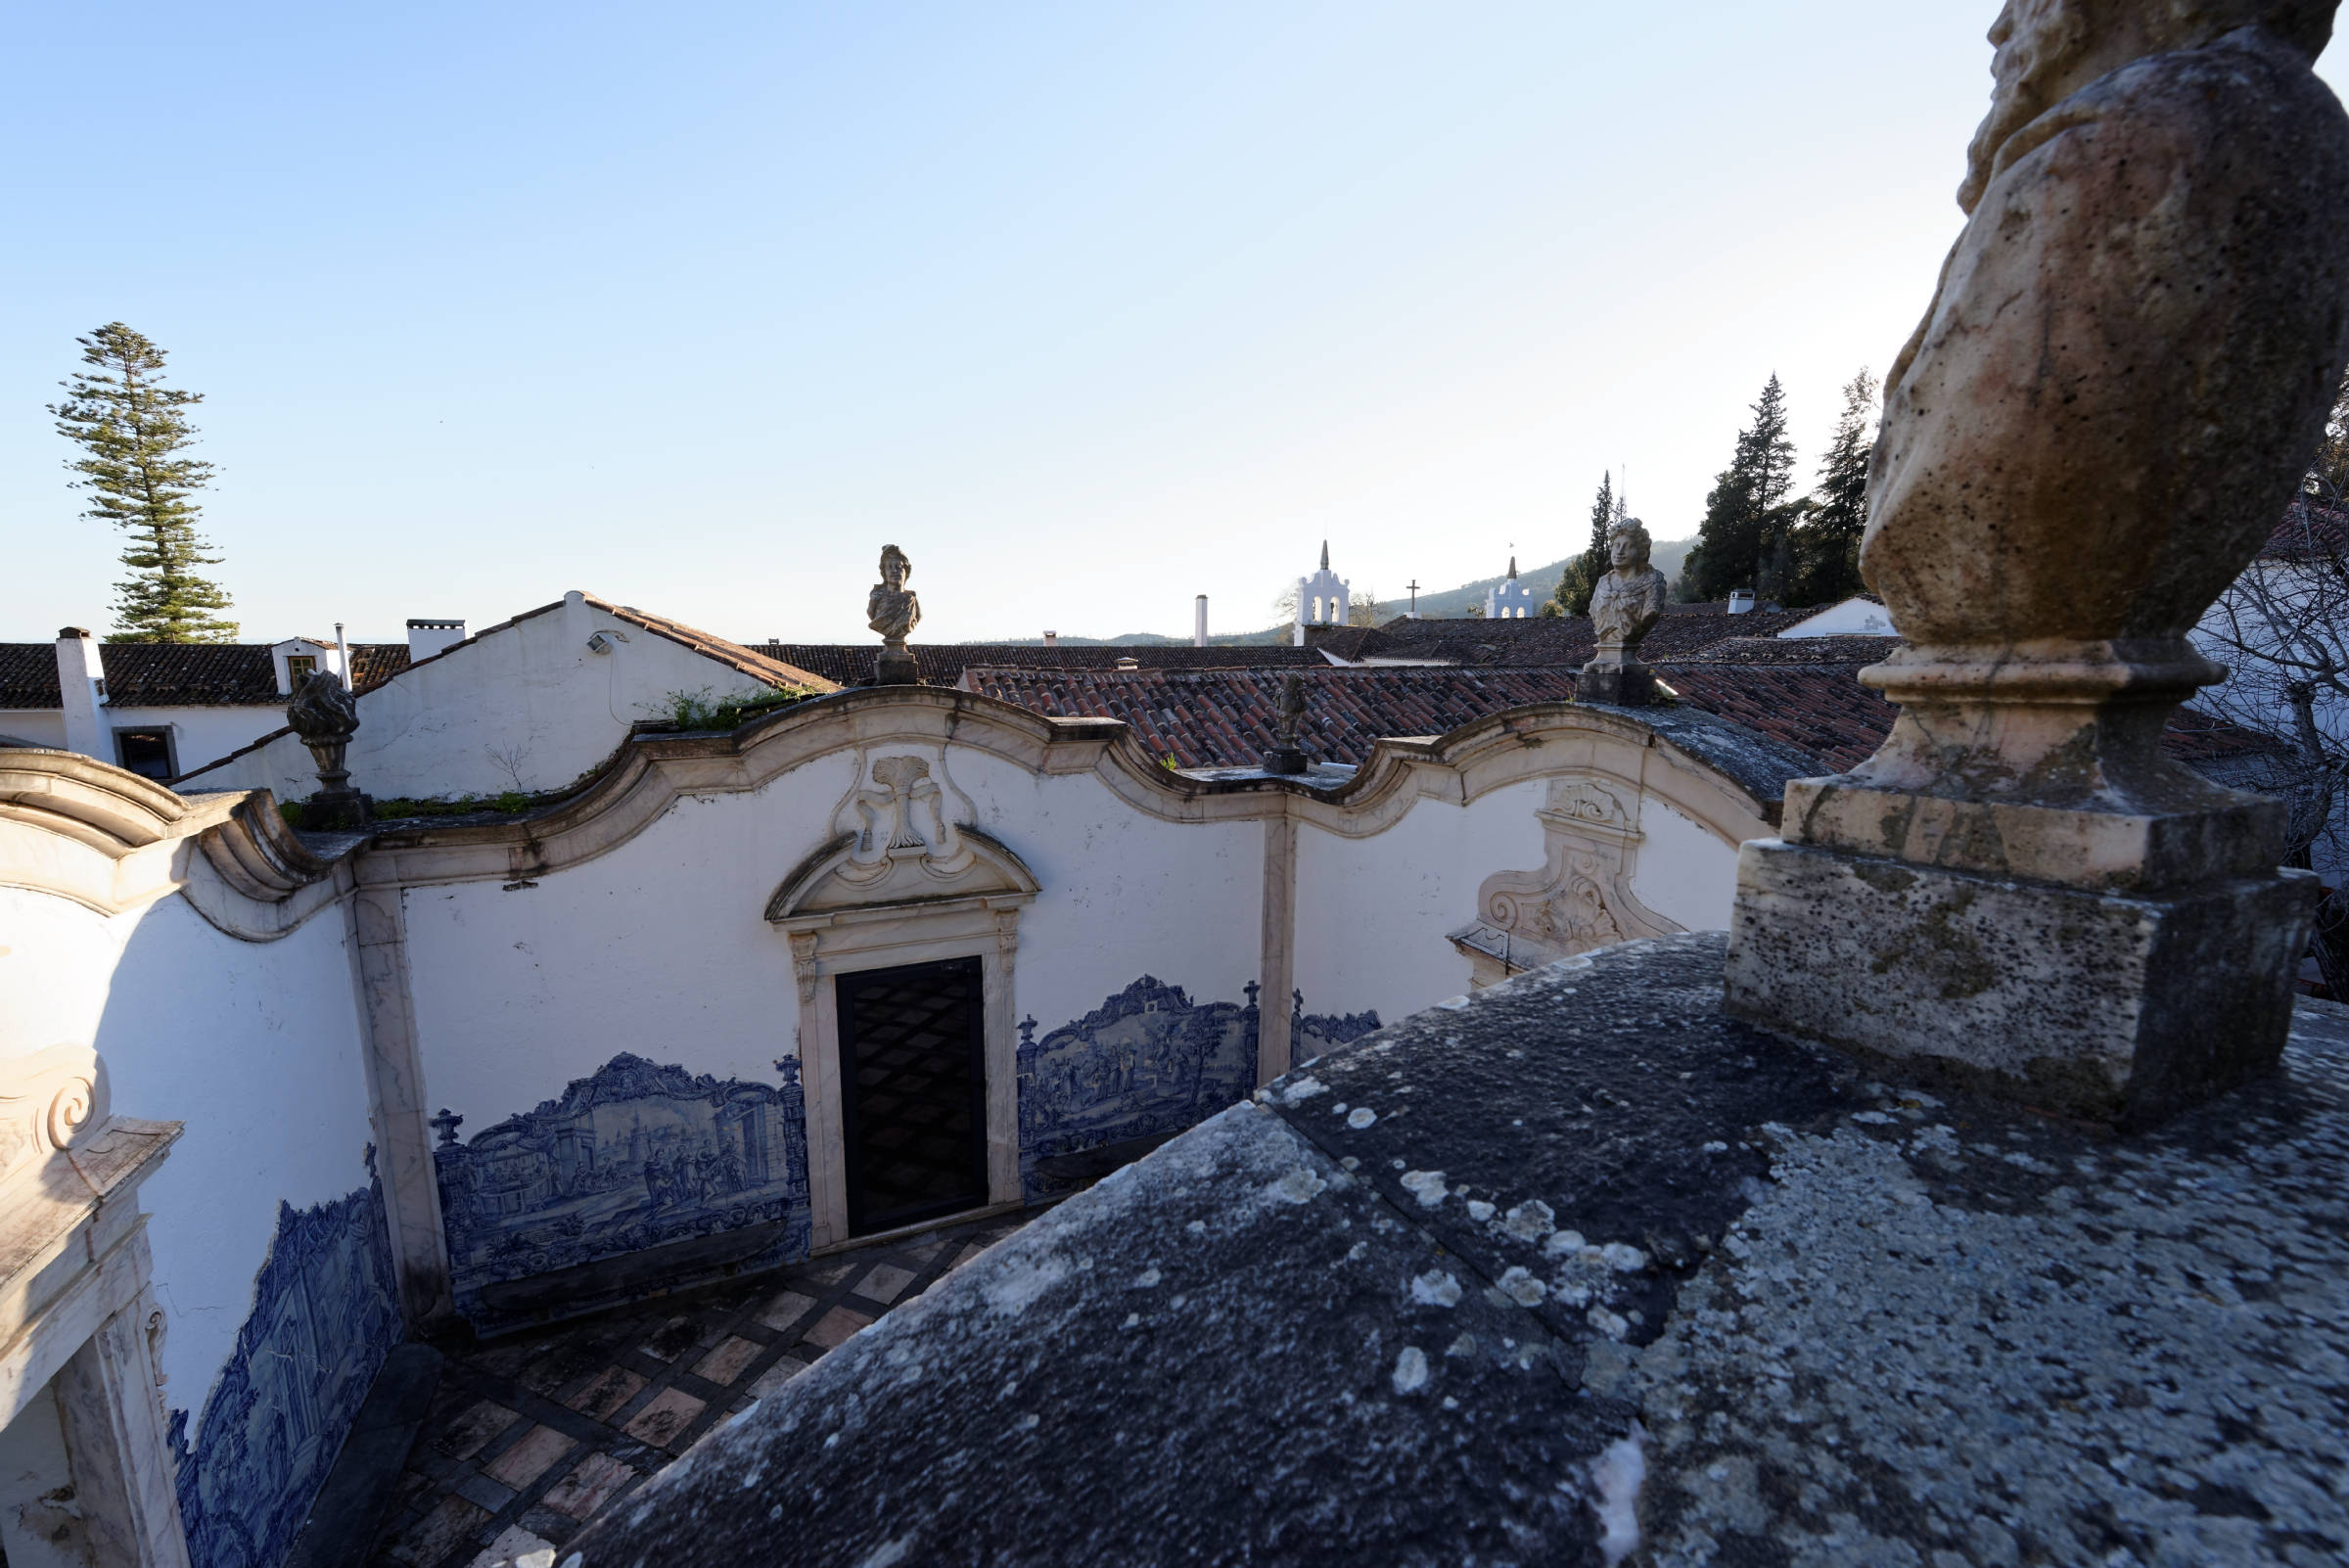 160407-Convento de sao paulo (Alentero Portugal) (132)